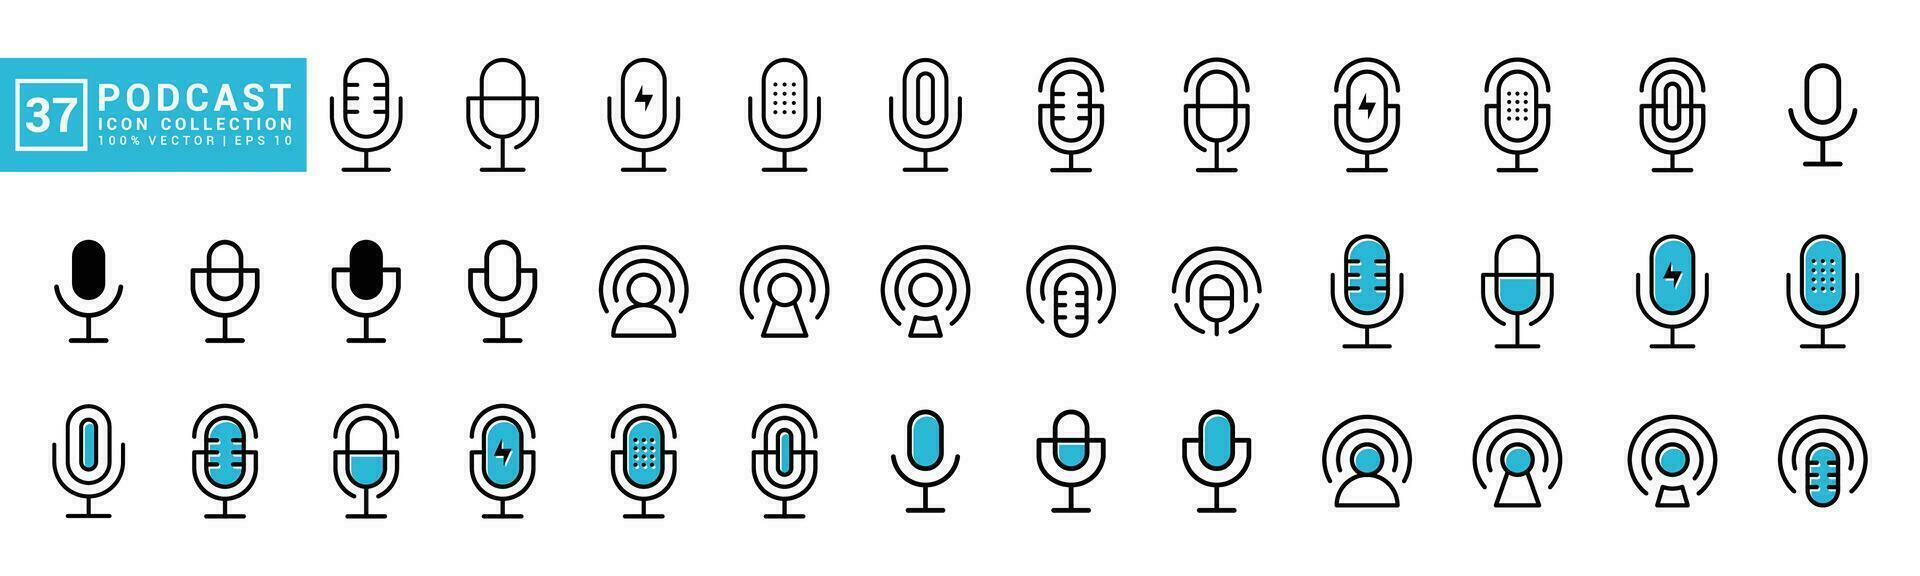 coleção do podcast ícones, microfone, bater papo, conversação, editável e redimensionável eps 10. vetor